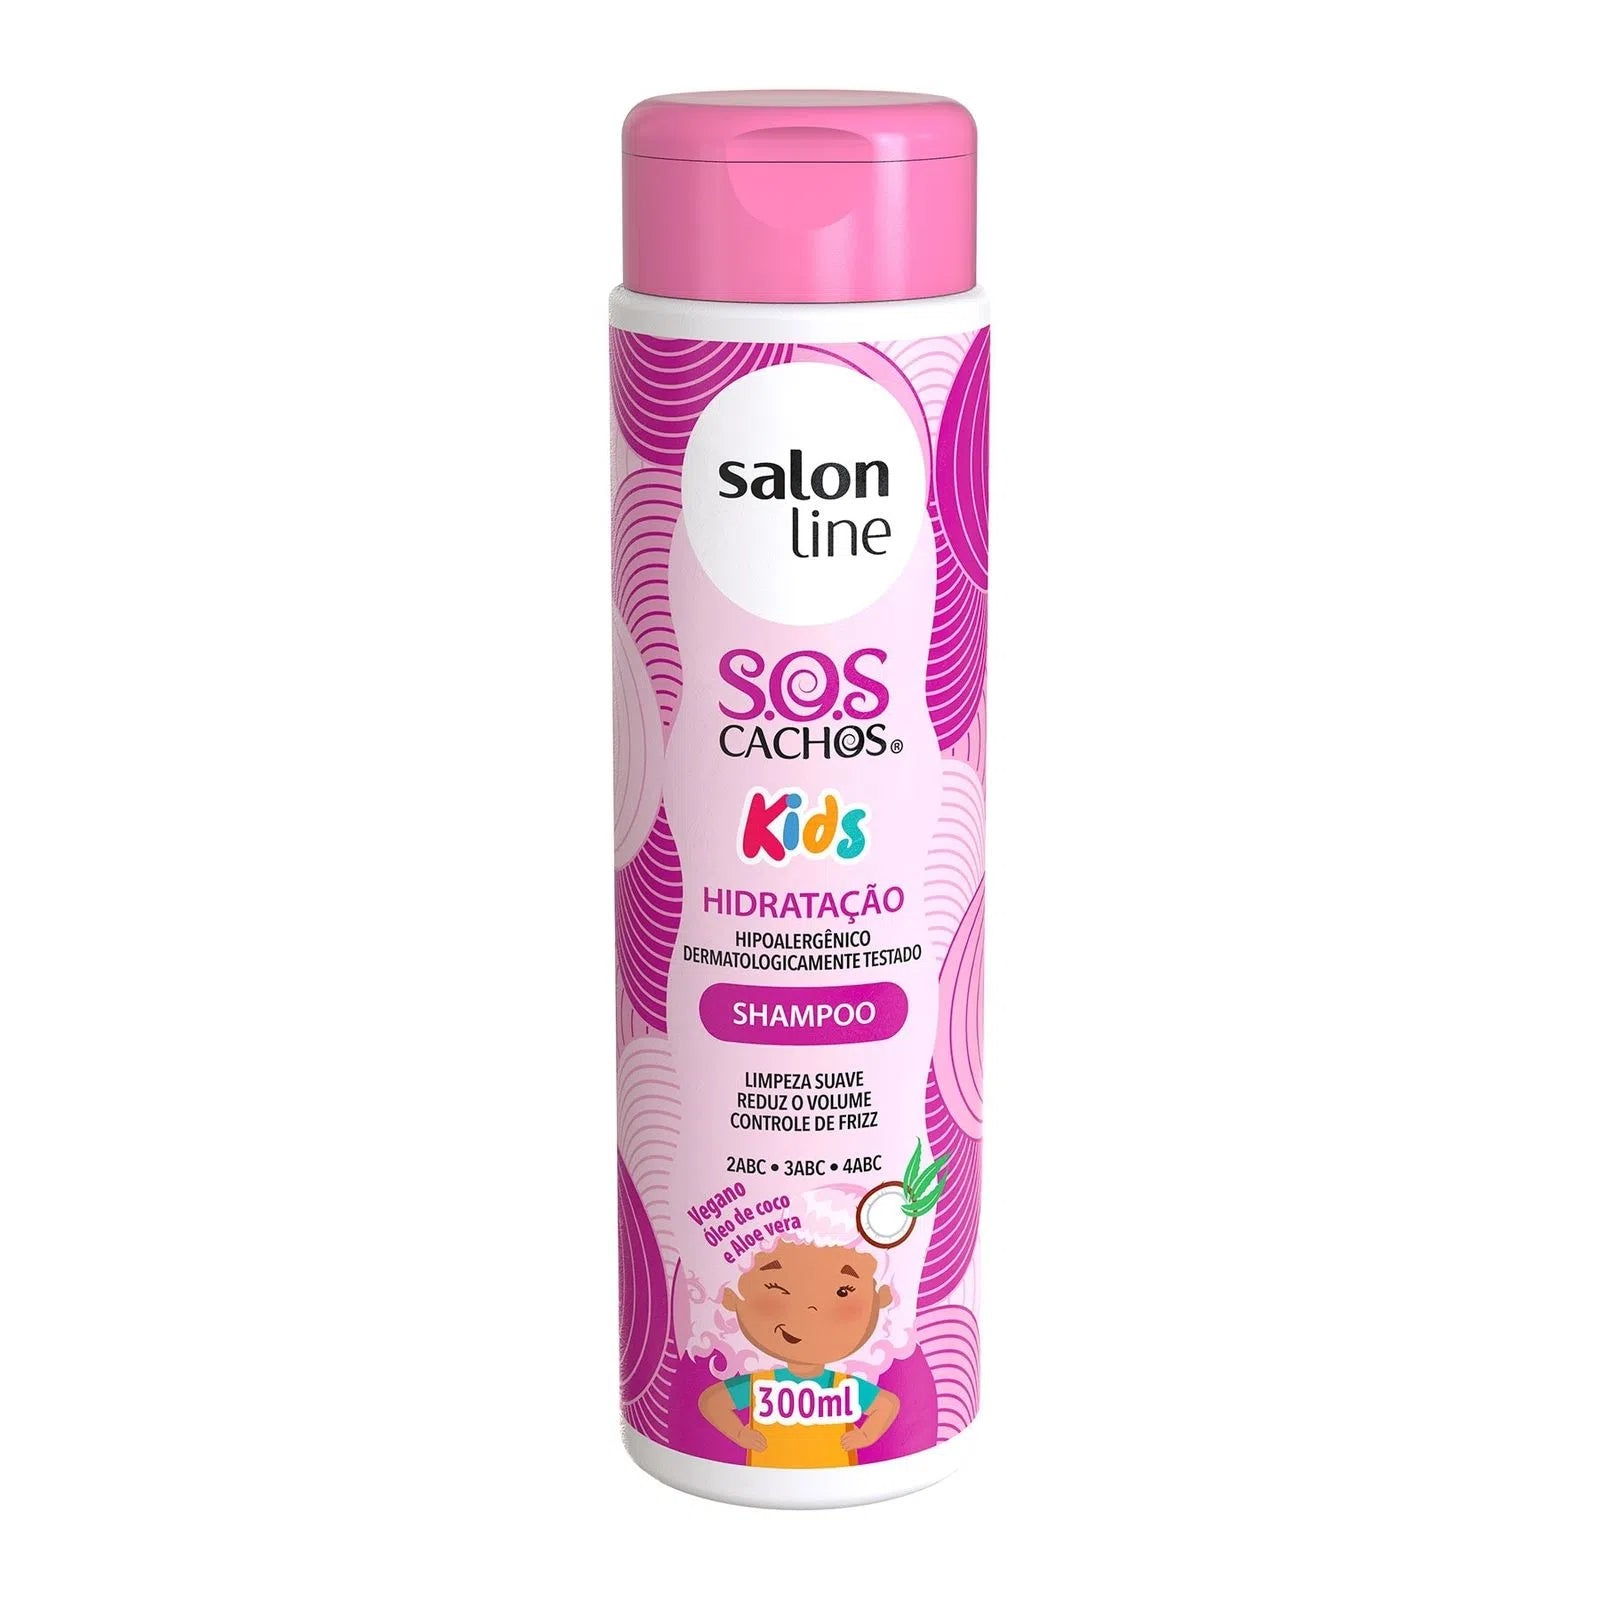 SOS Cachos Kinder Hidratação Shampoo Salon Line 300 ml